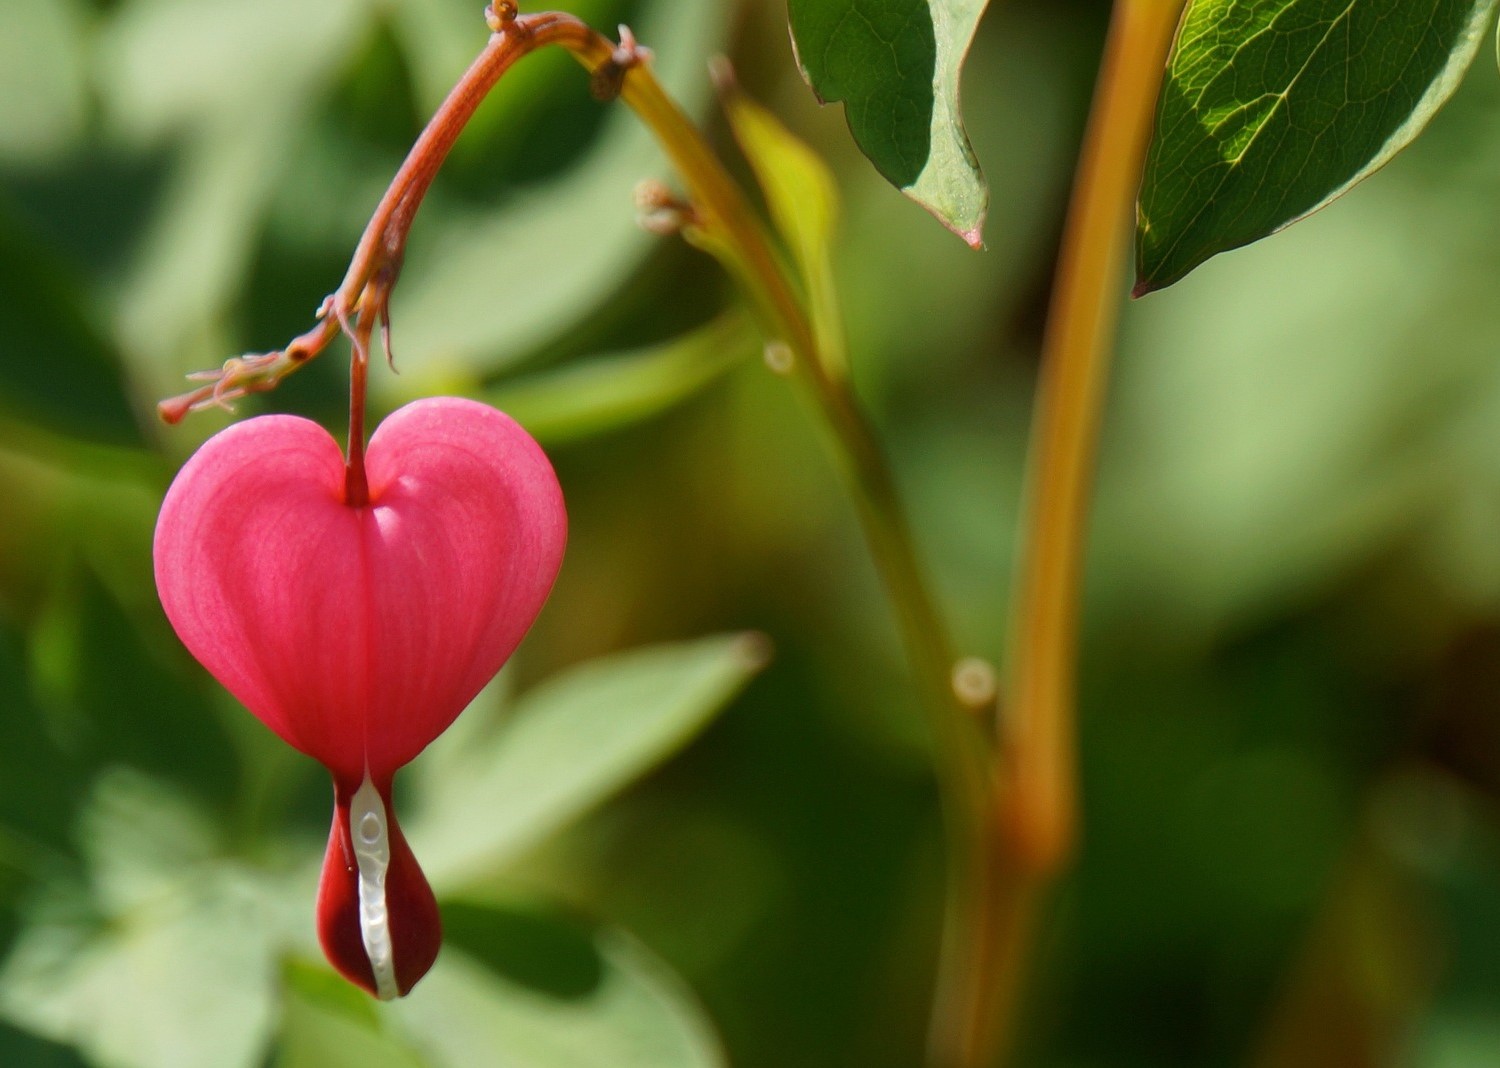 Image of a flower shaped like a heart